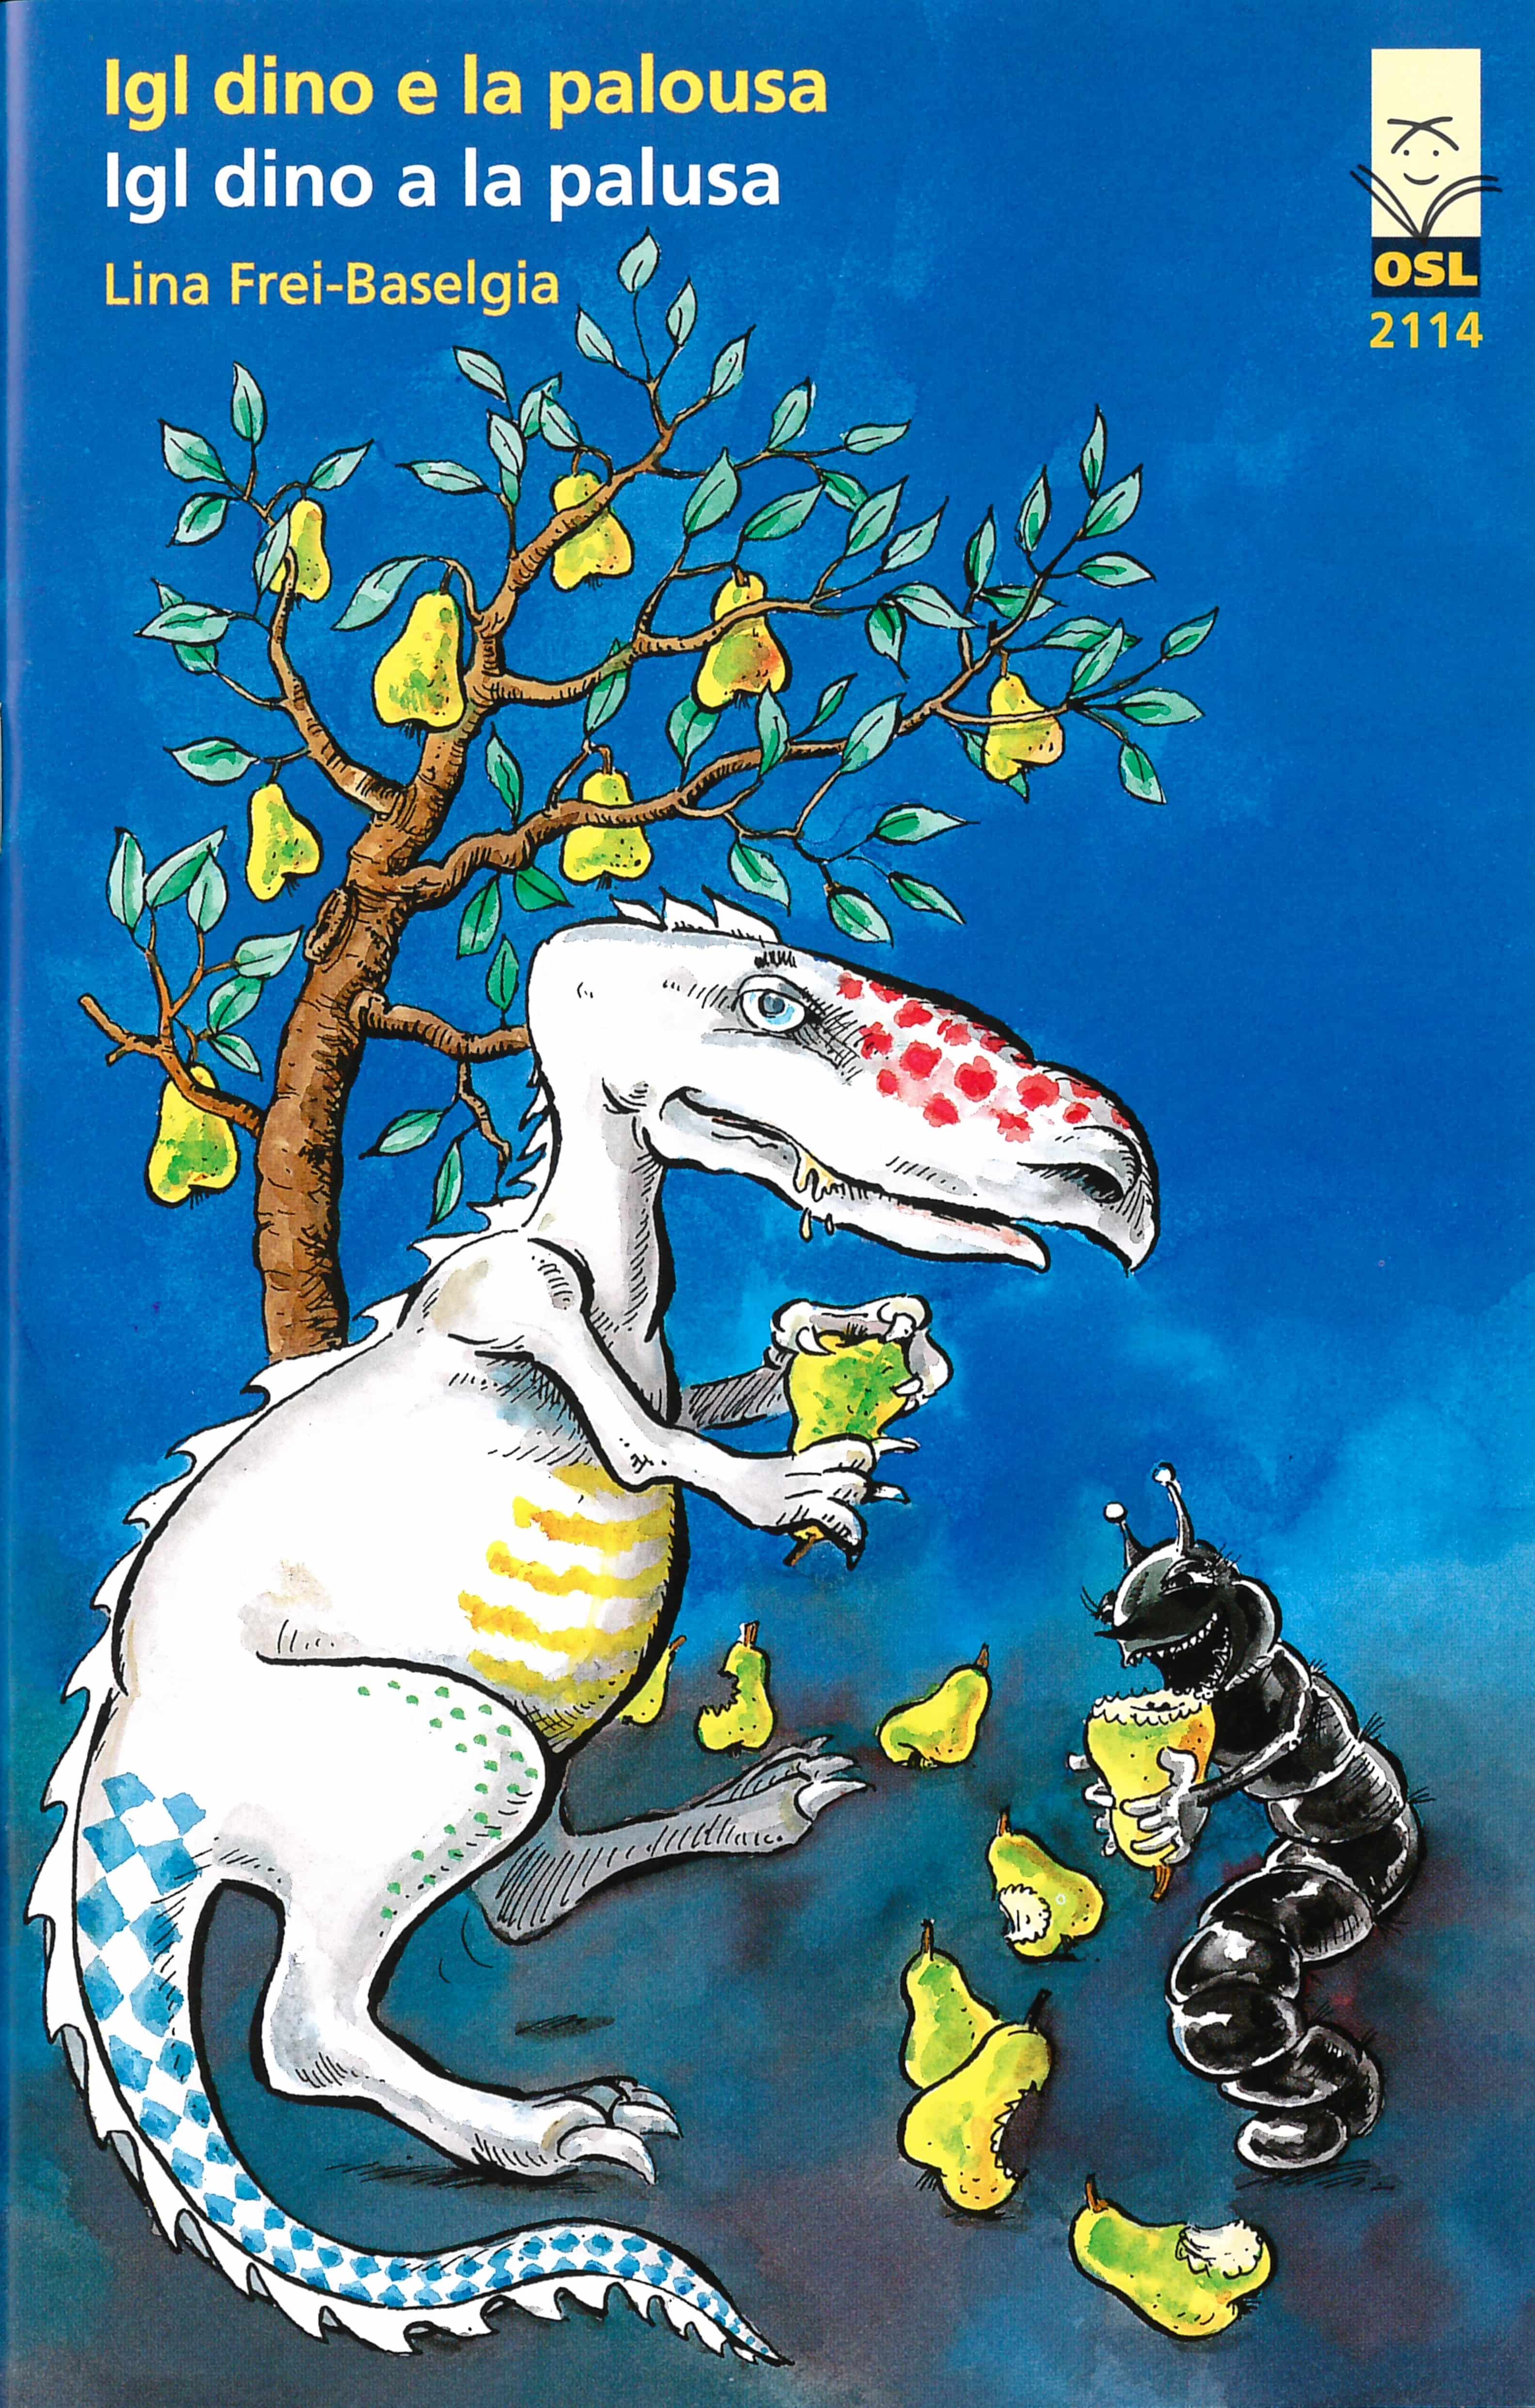 Igl dino e la palousa – Igl dino a la palusa, ein Kinderbuch von Lina Frei-Baselgia, Illustration von Markus Fricker, SJW